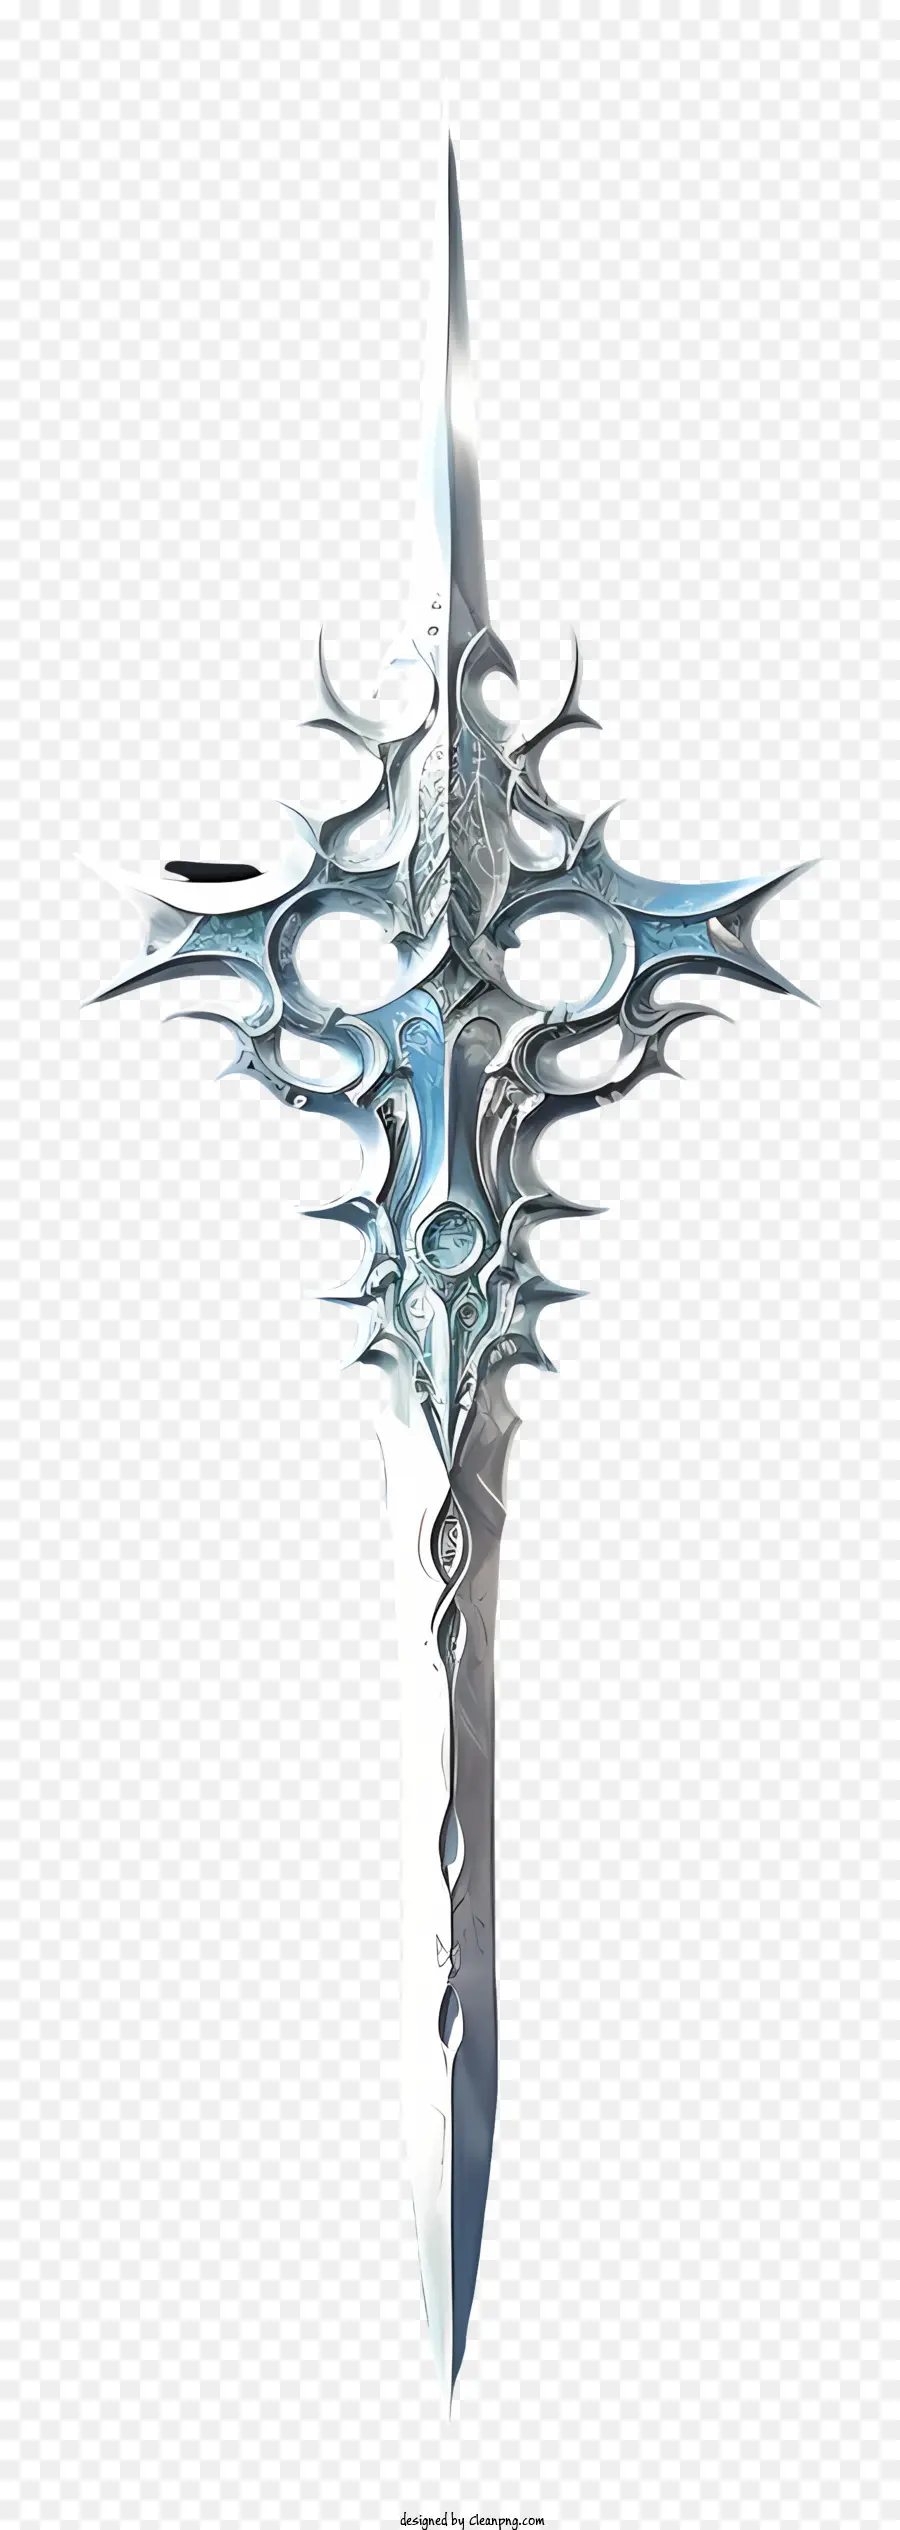 Diamond Sword Surrealist-Fantasy Sword Cross Silver Sword Dettagli intricati - Una spada argentata dettagliata e minacciosa pronta per il combattimento